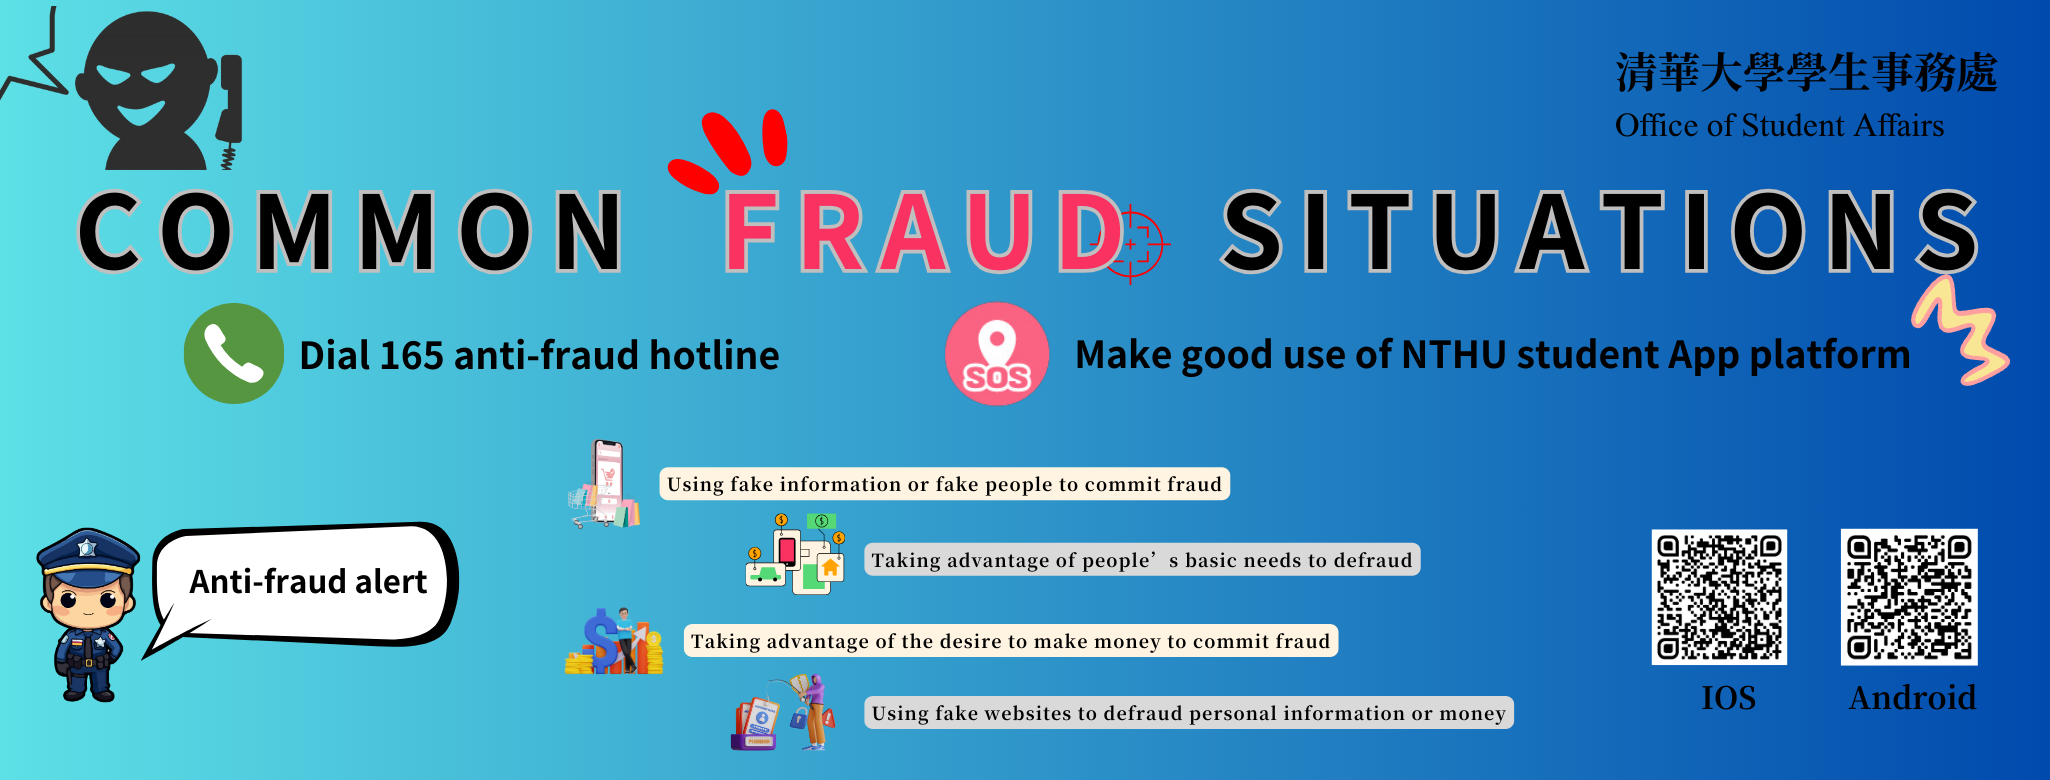 Anti-fraud Alert